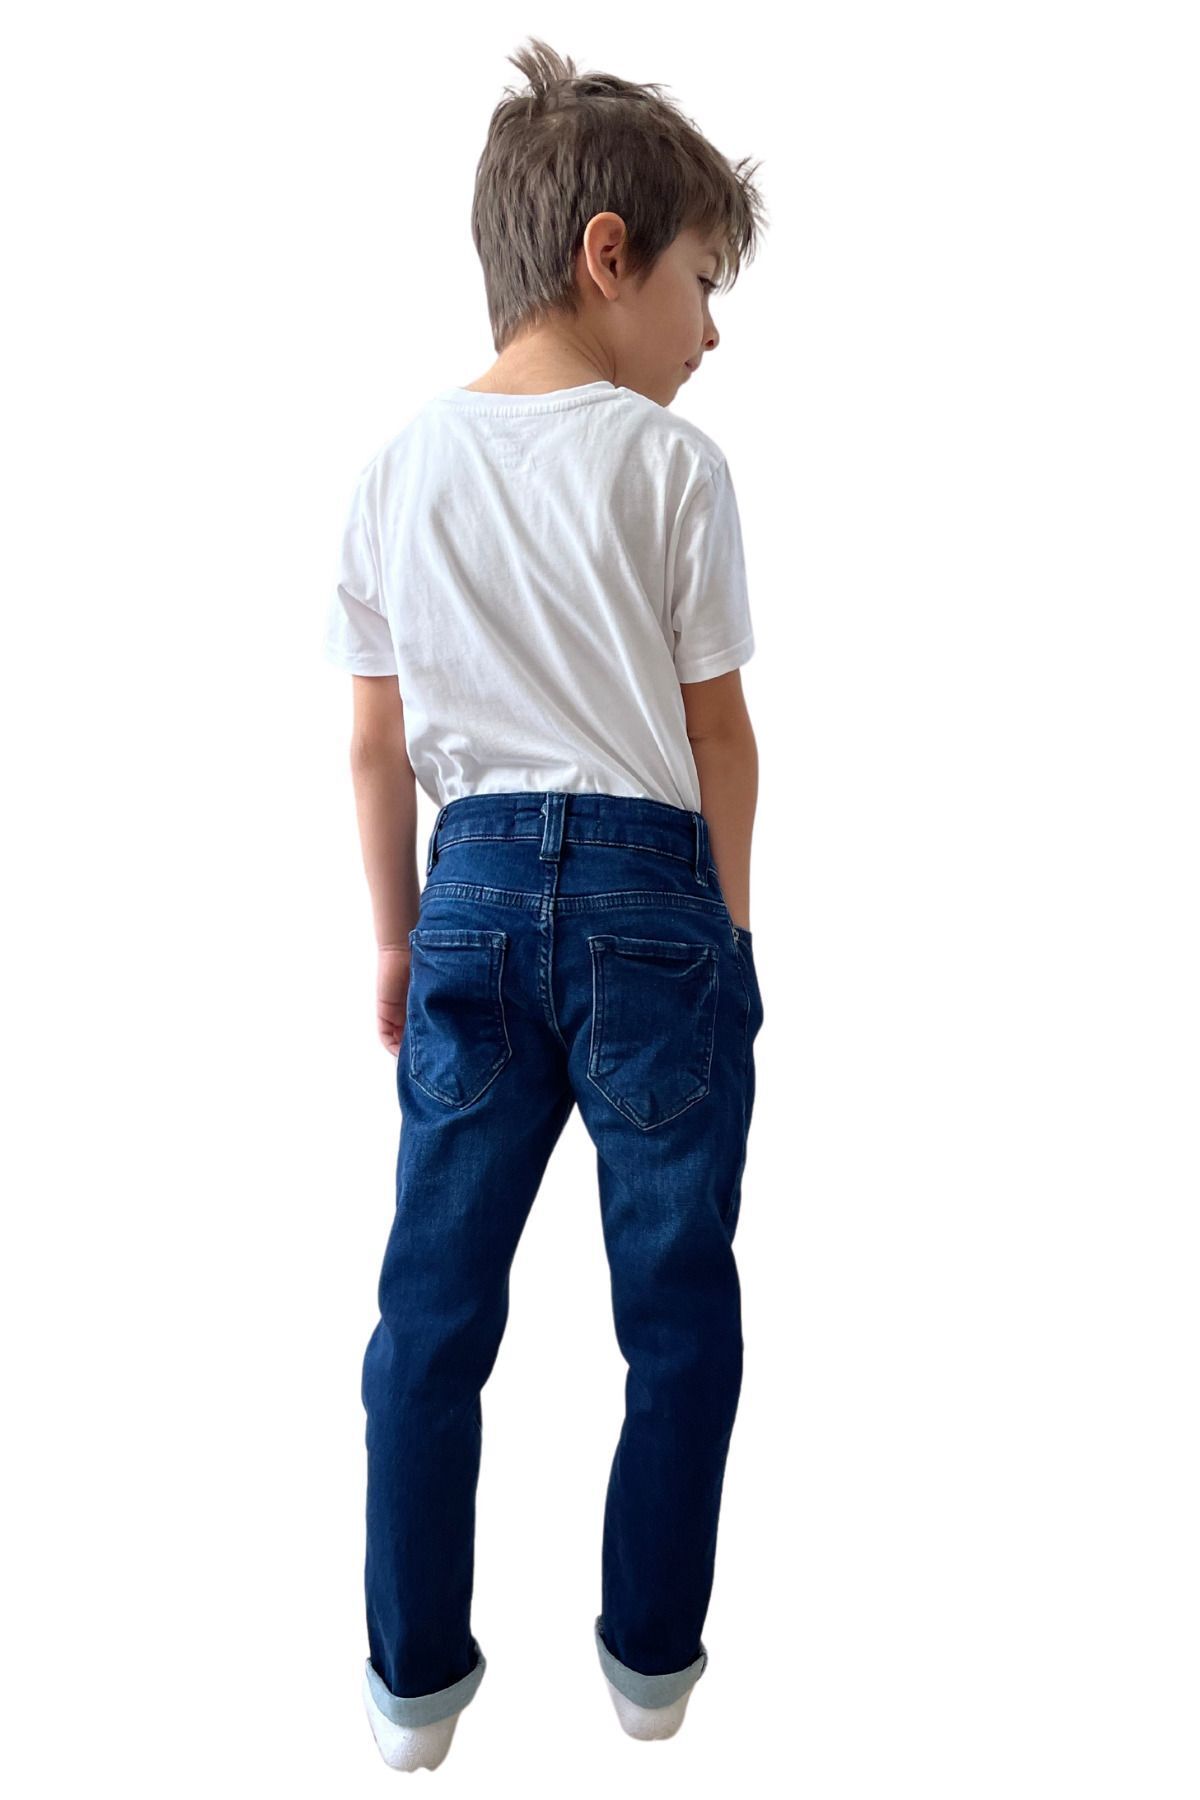 FourClovers Erkek Çocuk Lacivert Likralı Belden Ayarlamalı  Kot Pantalon